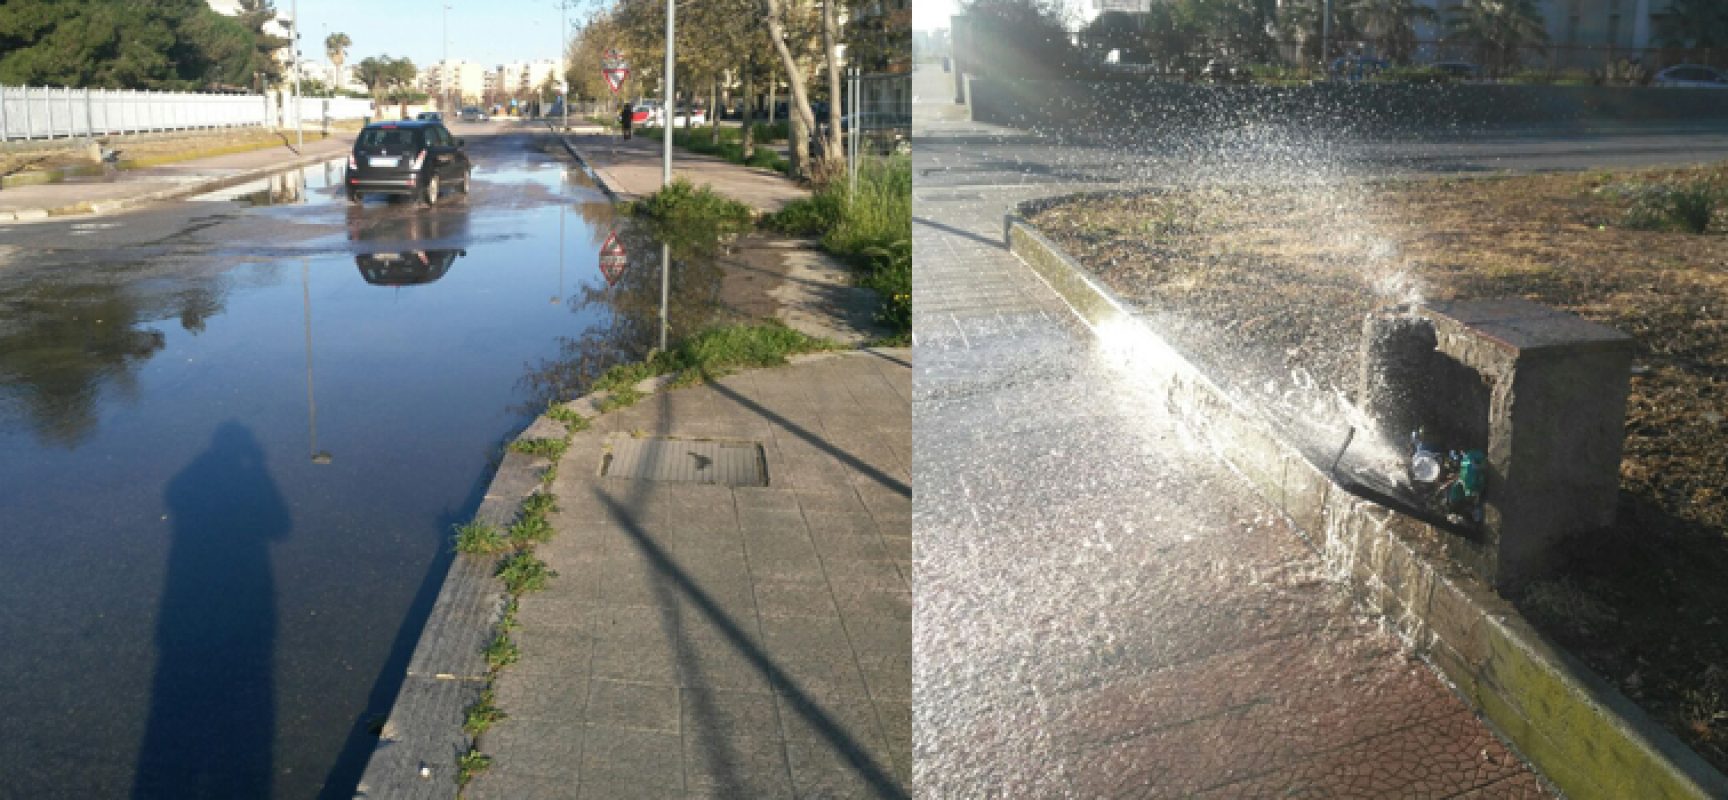 Centinaia di litri di acqua pubblica in strada nel quartiere Sant’Andrea, atto vandalico?